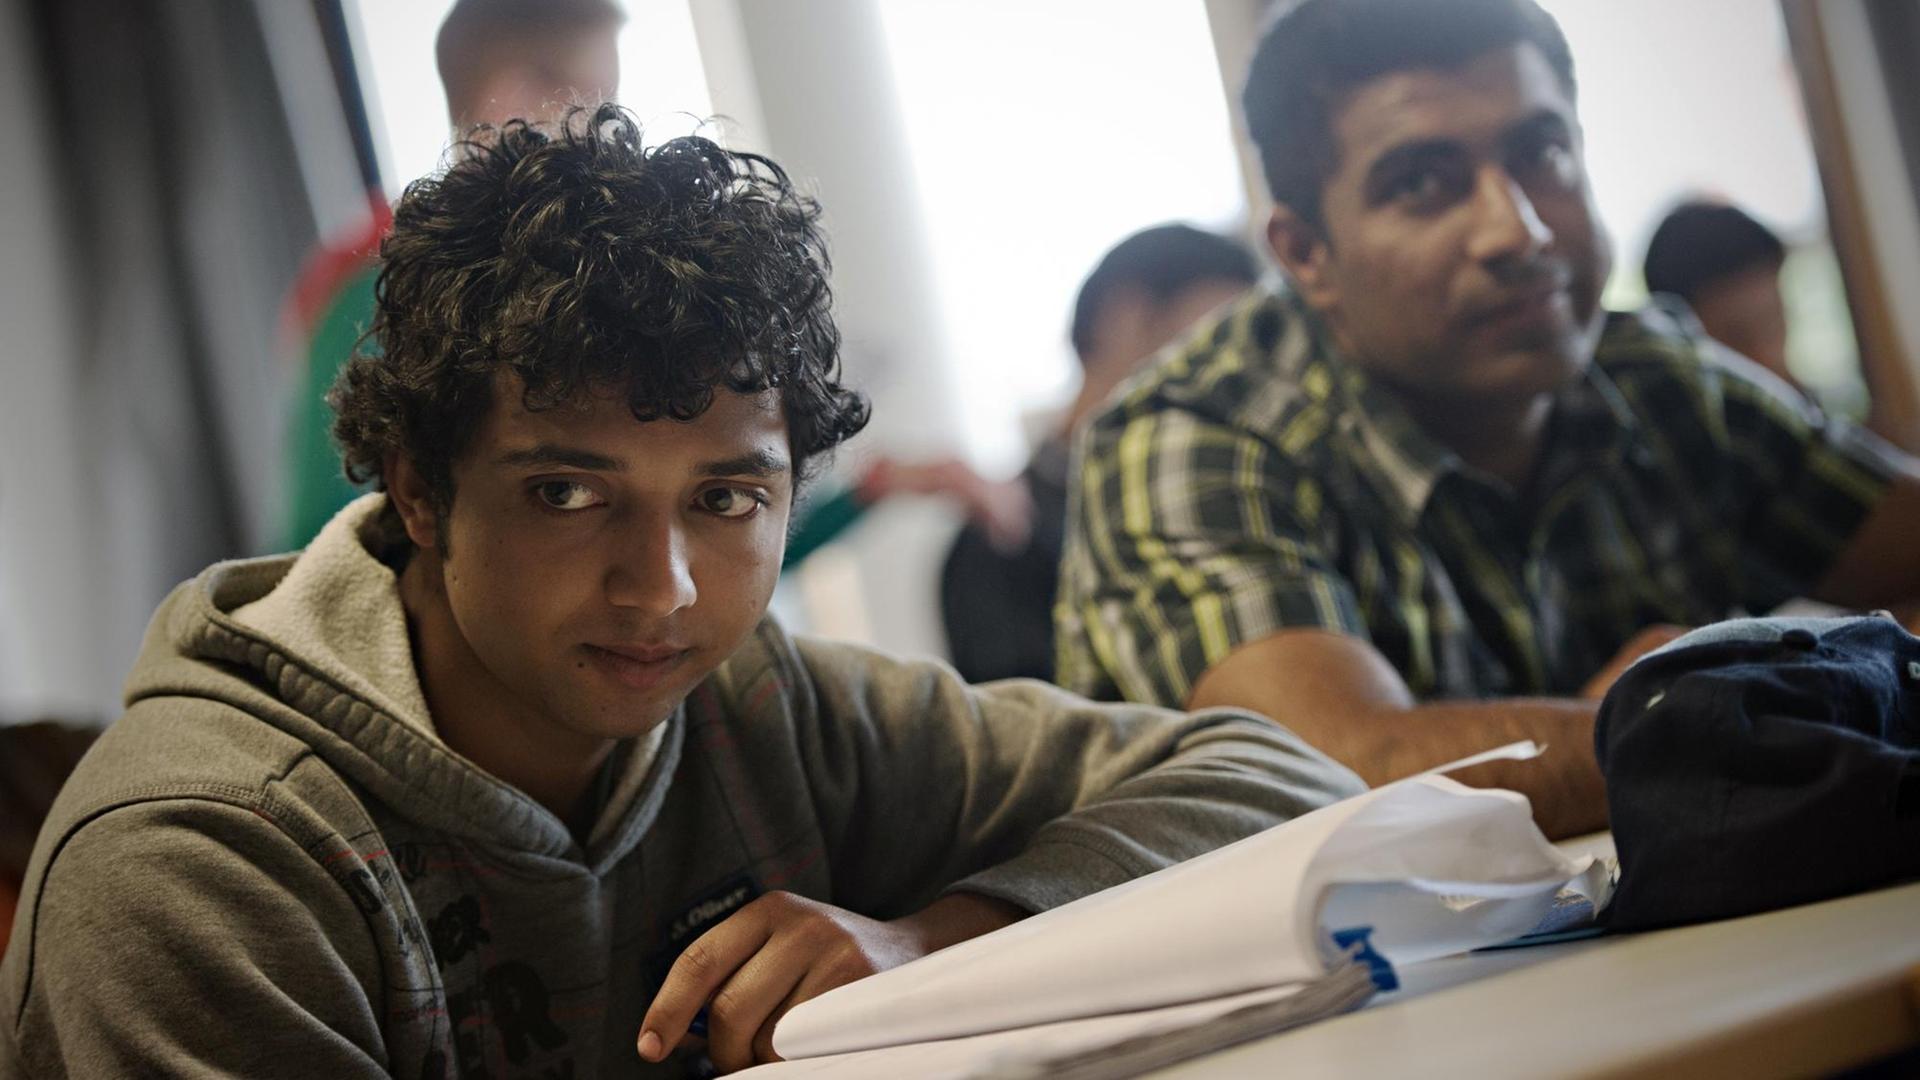 In Bayern lernen Flüchtlinge zwei Jahre gemeinsam an einer Berufsschule